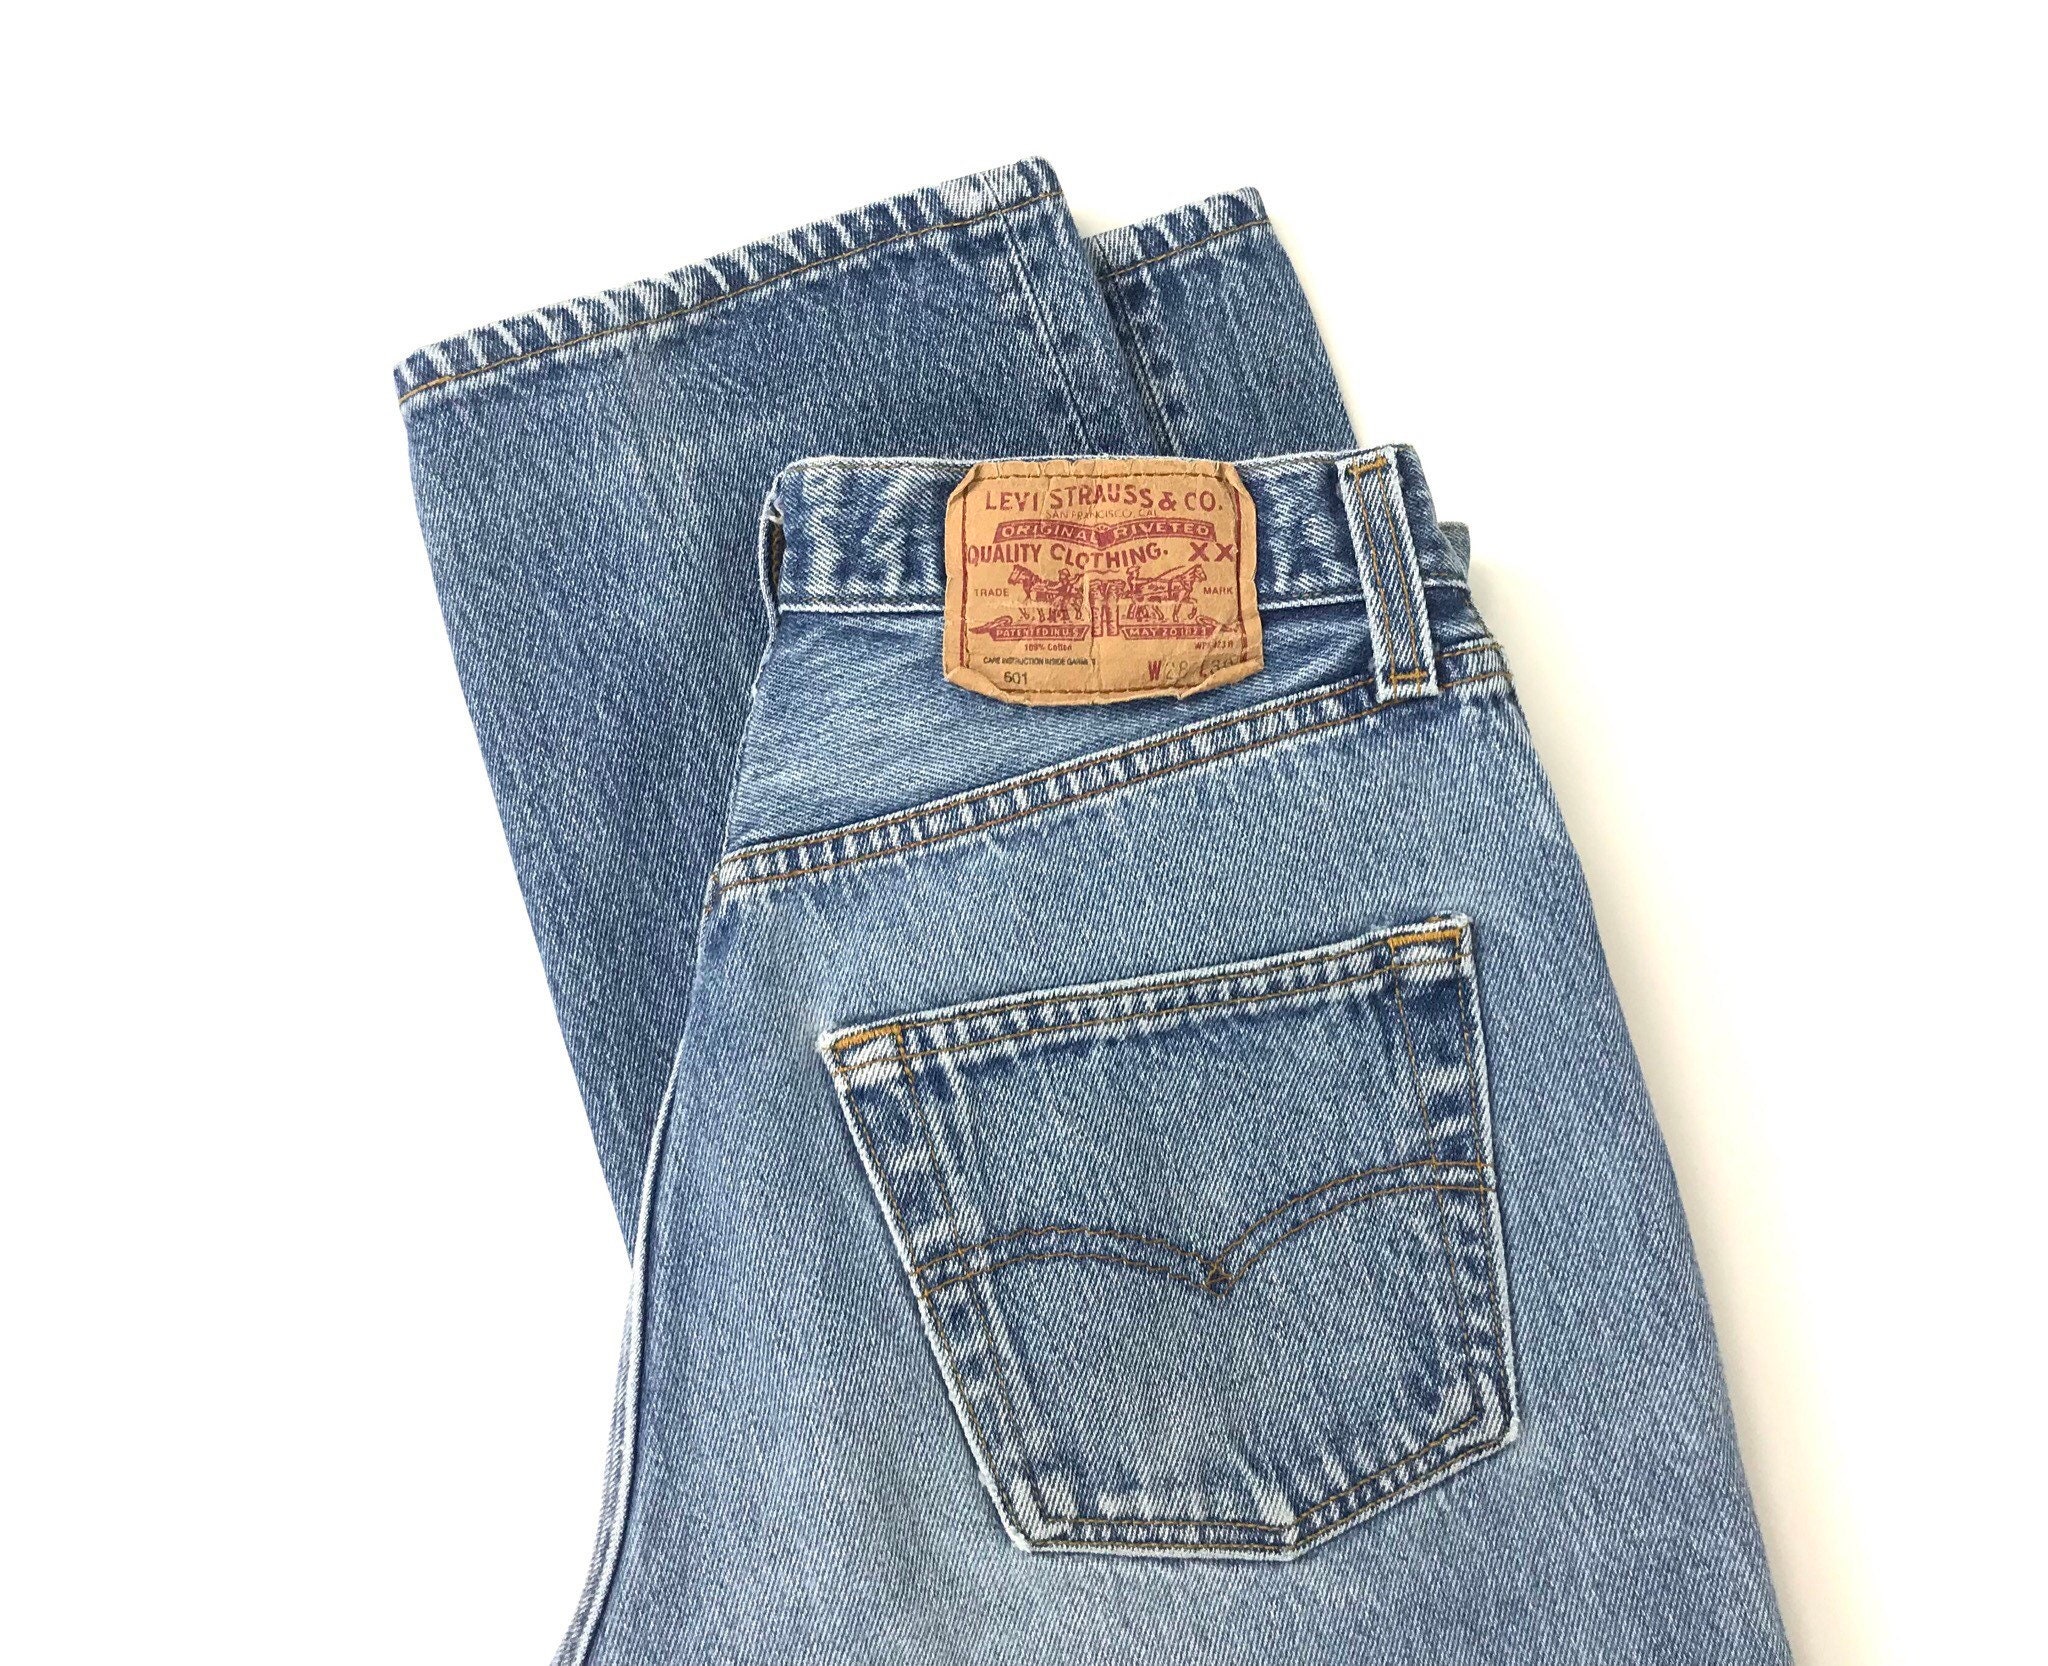 Vintage Levi's 501 Jeans / Size 25 26